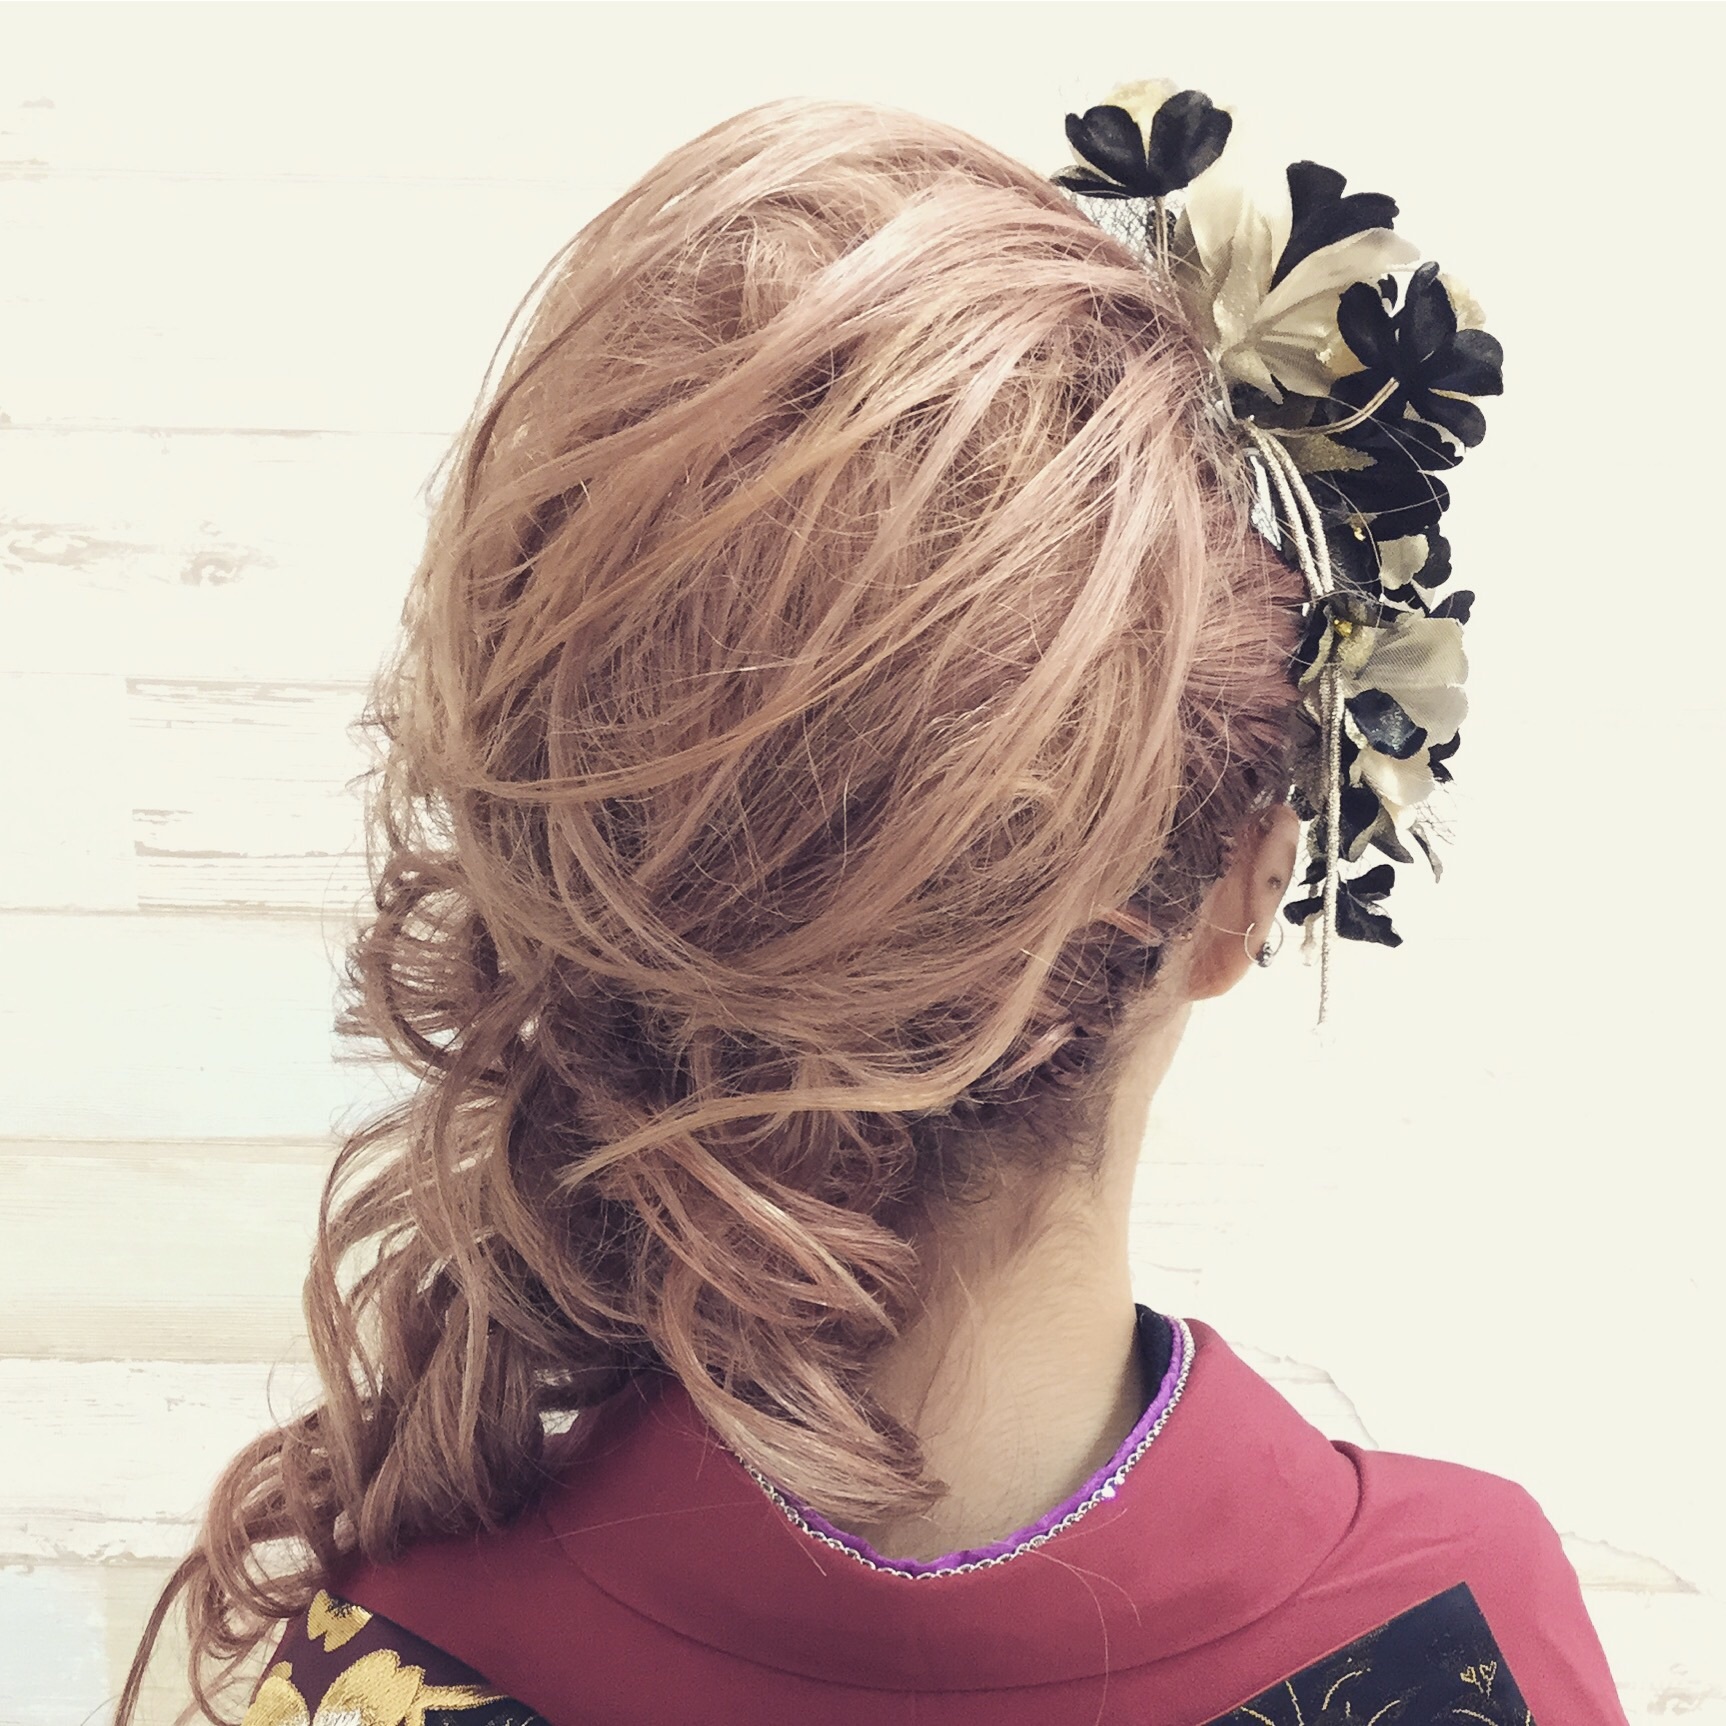 成人式の定番 盛り髪ヘアアレンジ で華やかさをプラス アニバーサリースタジオガーネット